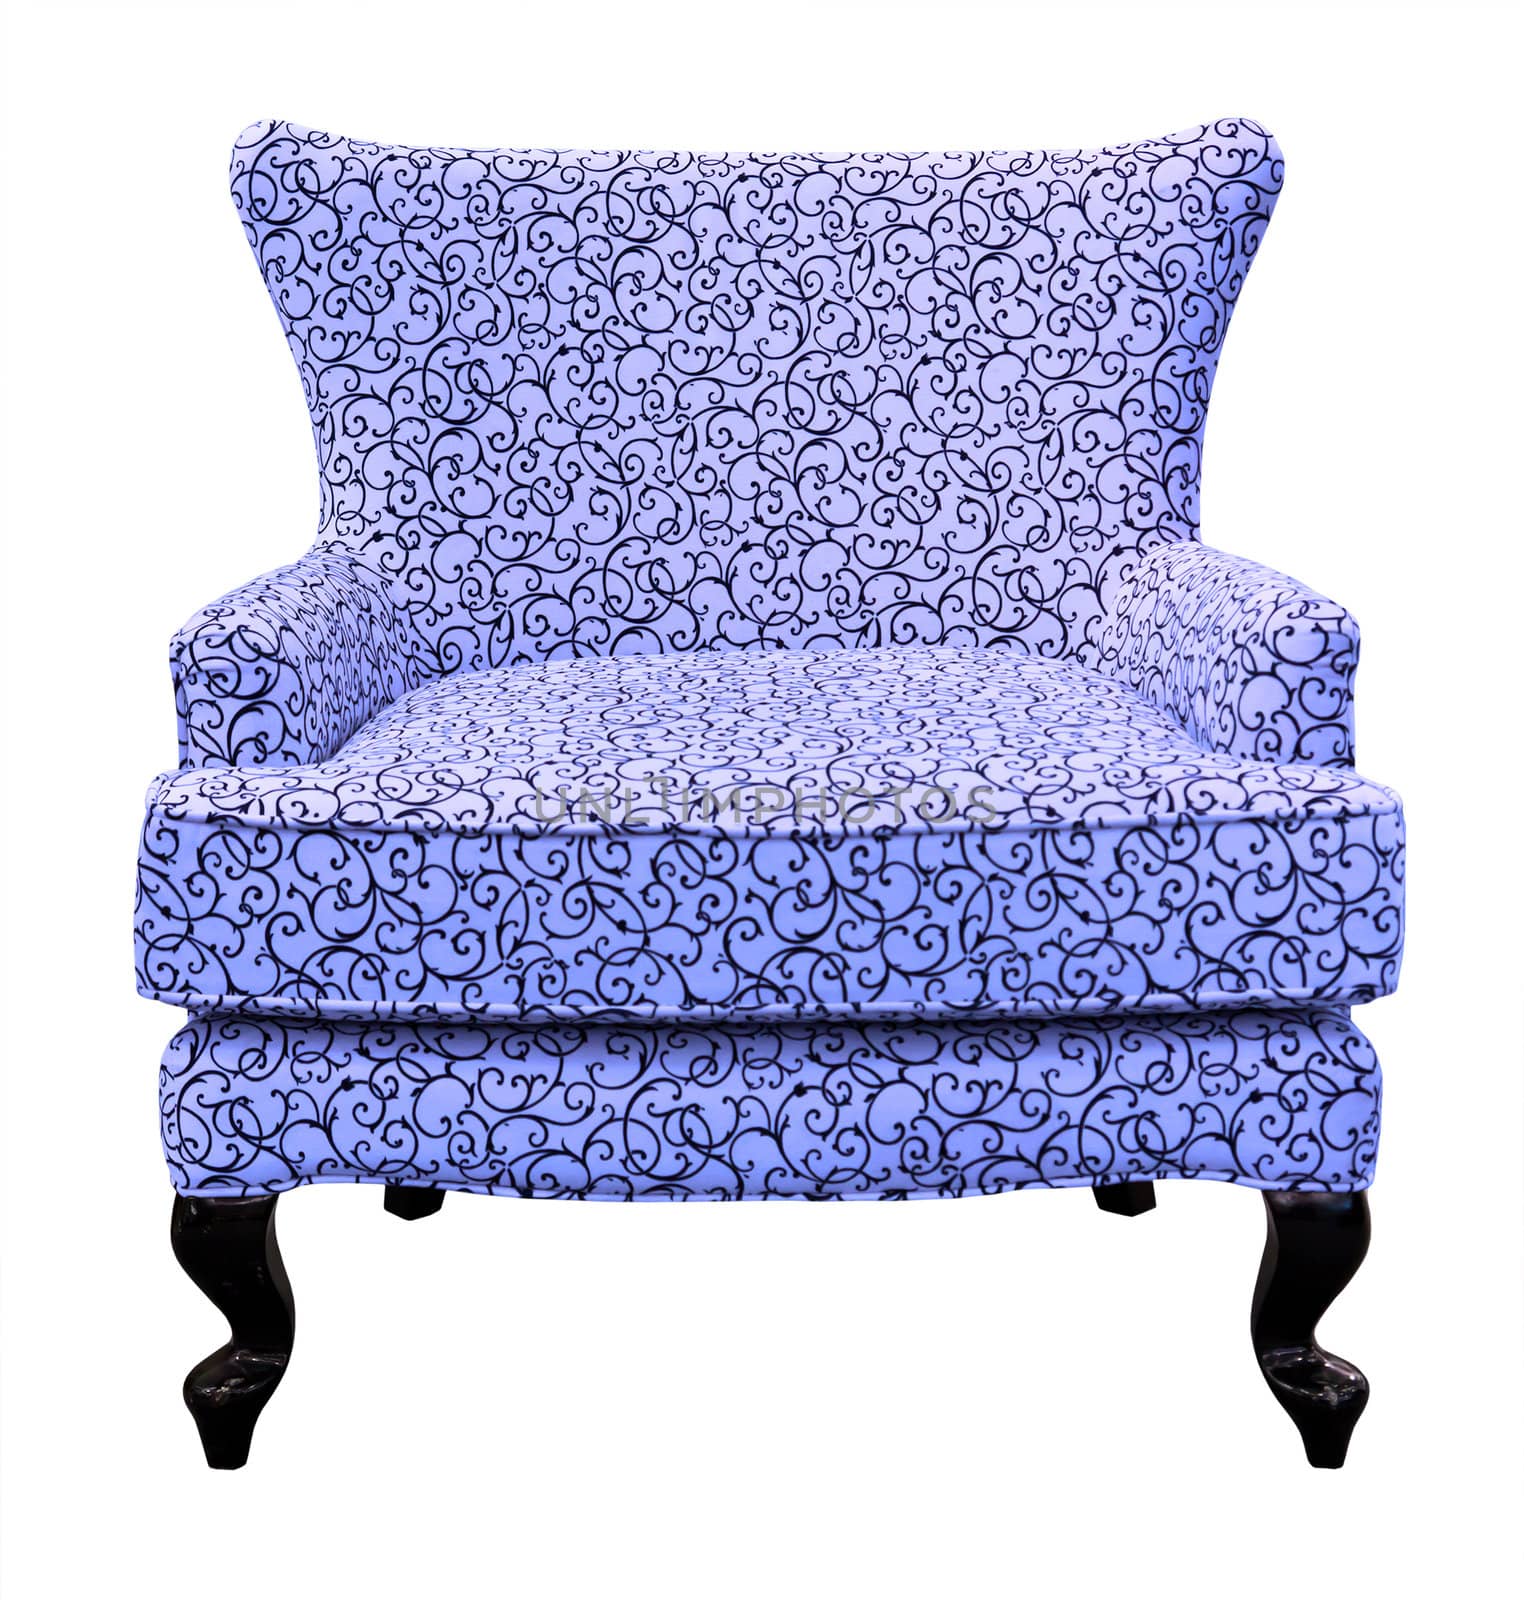 blue sofa isolated on white background